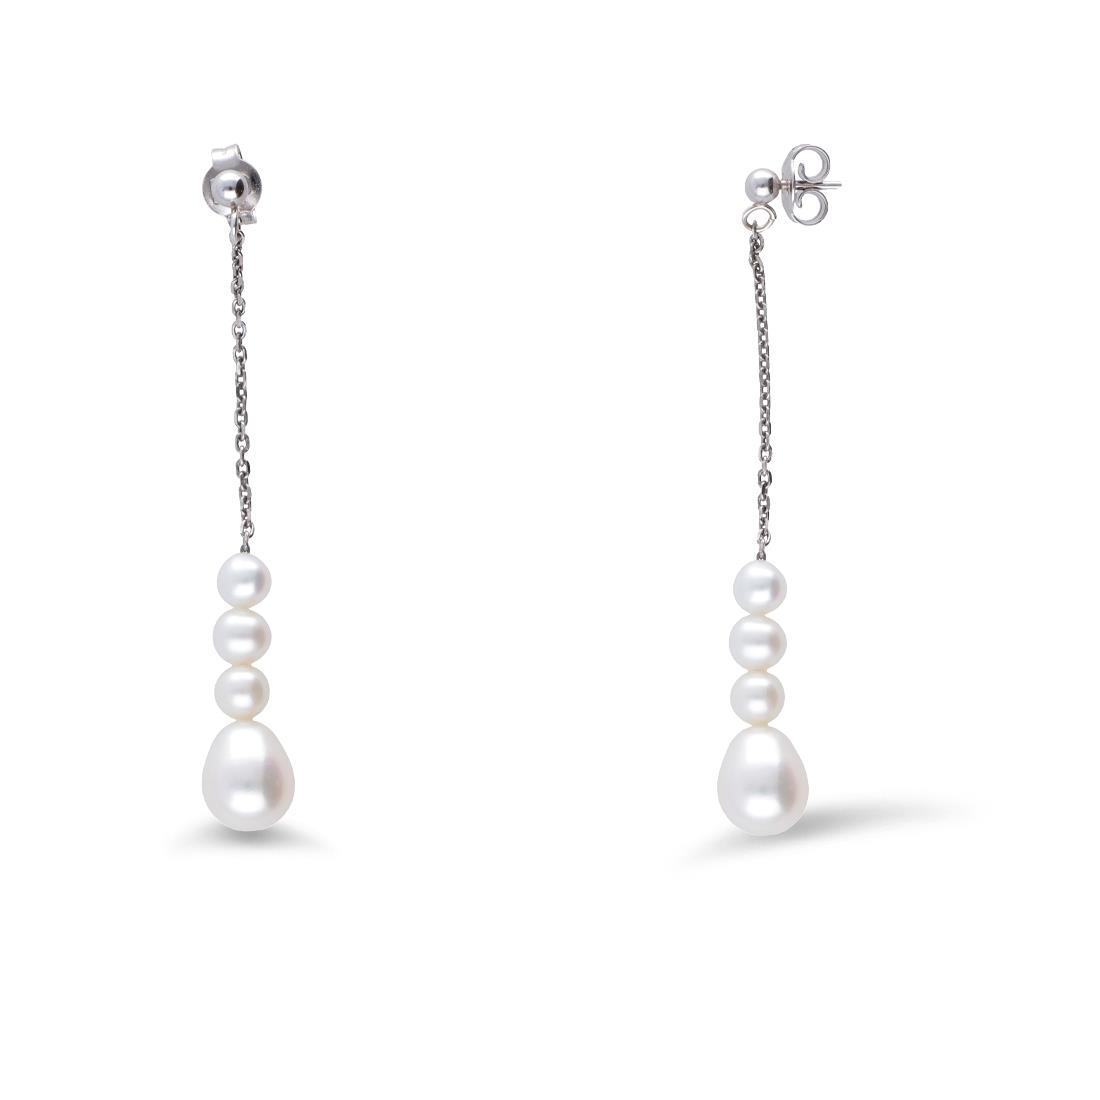 Orecchini pendenti in argento con perle a goccia a scalare - MAYUMI